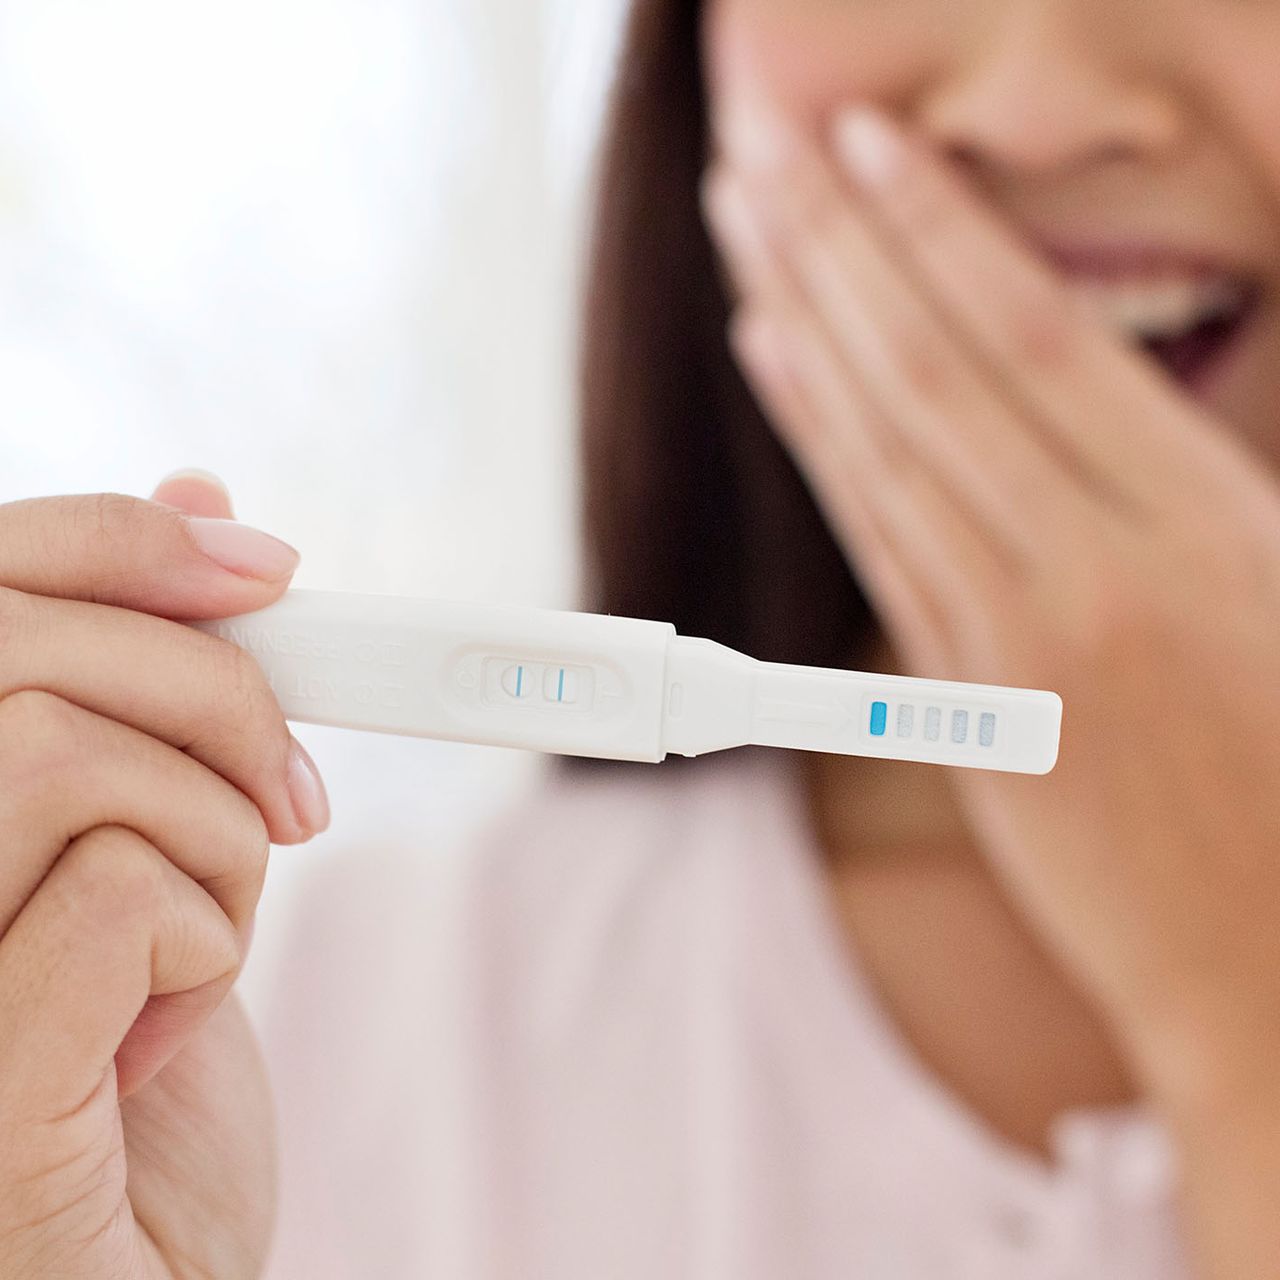 Geworden am schwanger wer durch sperma finger ist Schwanger nach